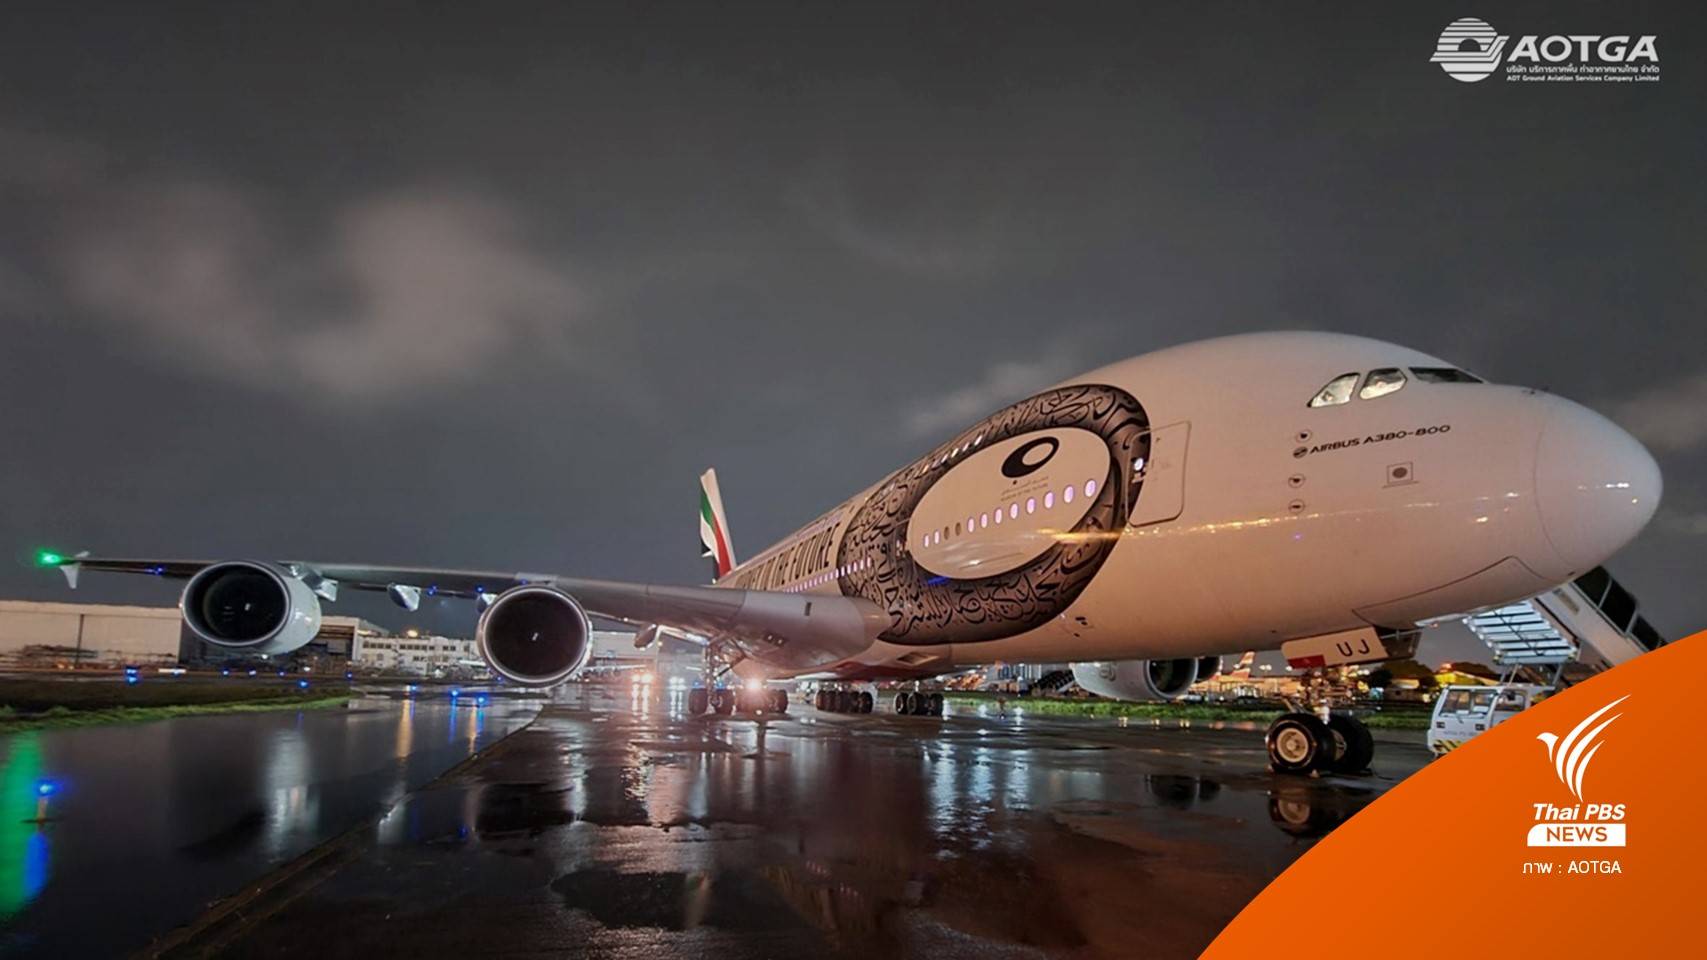 ลงจอดดอนเมืองครั้งแรก Airbus A380 หนีพายุฝนสุวรรณภูมิ